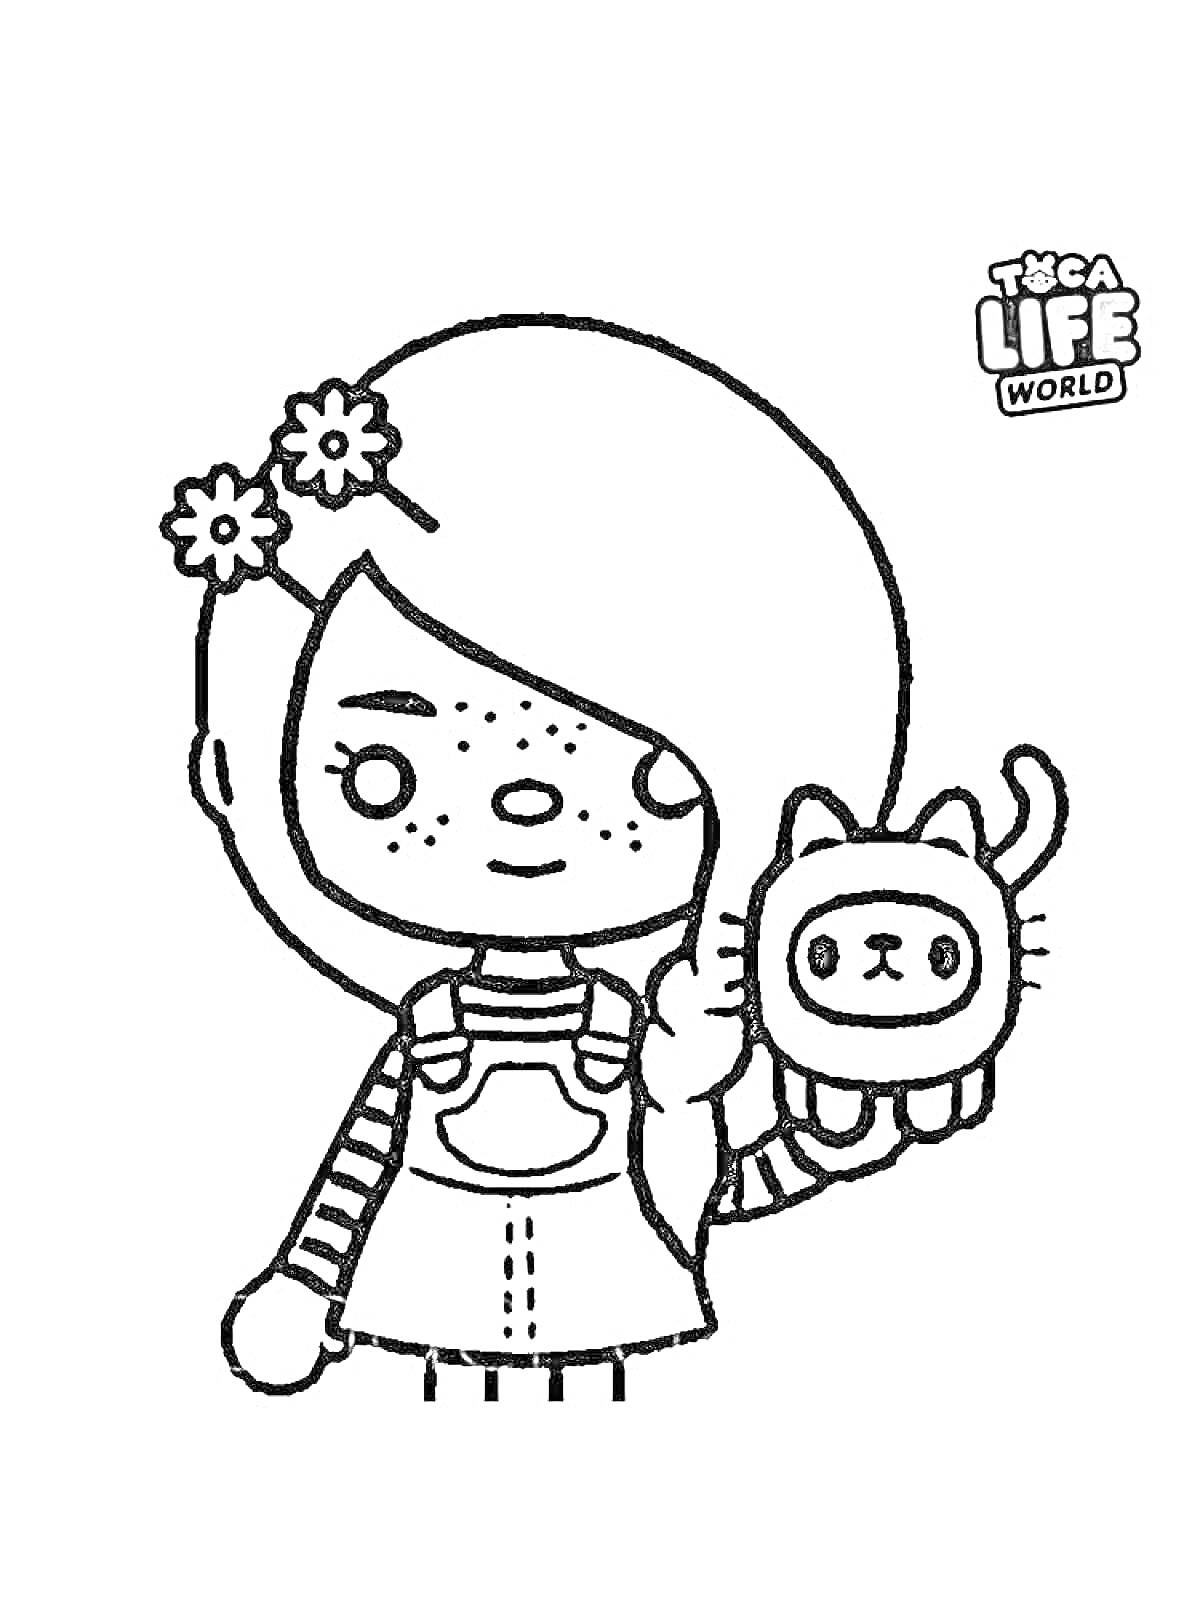 Девочка с косичками и цветочками в волосах, держащая котенка-маркер